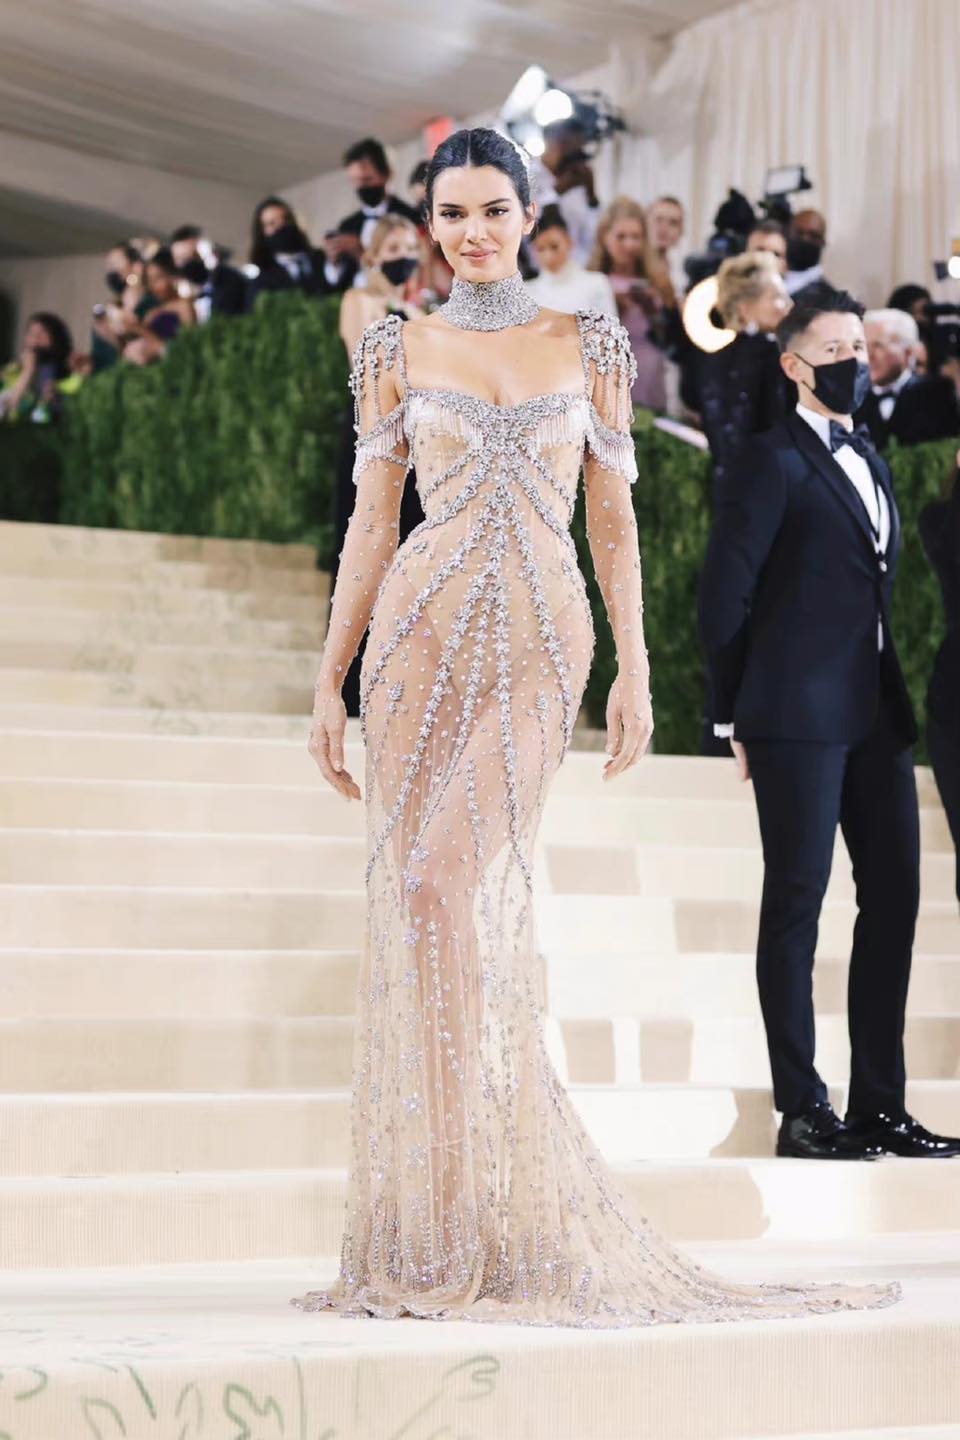 Chiếc đầm của Ngọc Trinh tại Cannes được so sánh với với mỹ nhân Kendall Jenner, nhưng thần thái bị cho kém sang hẳn - ảnh 3